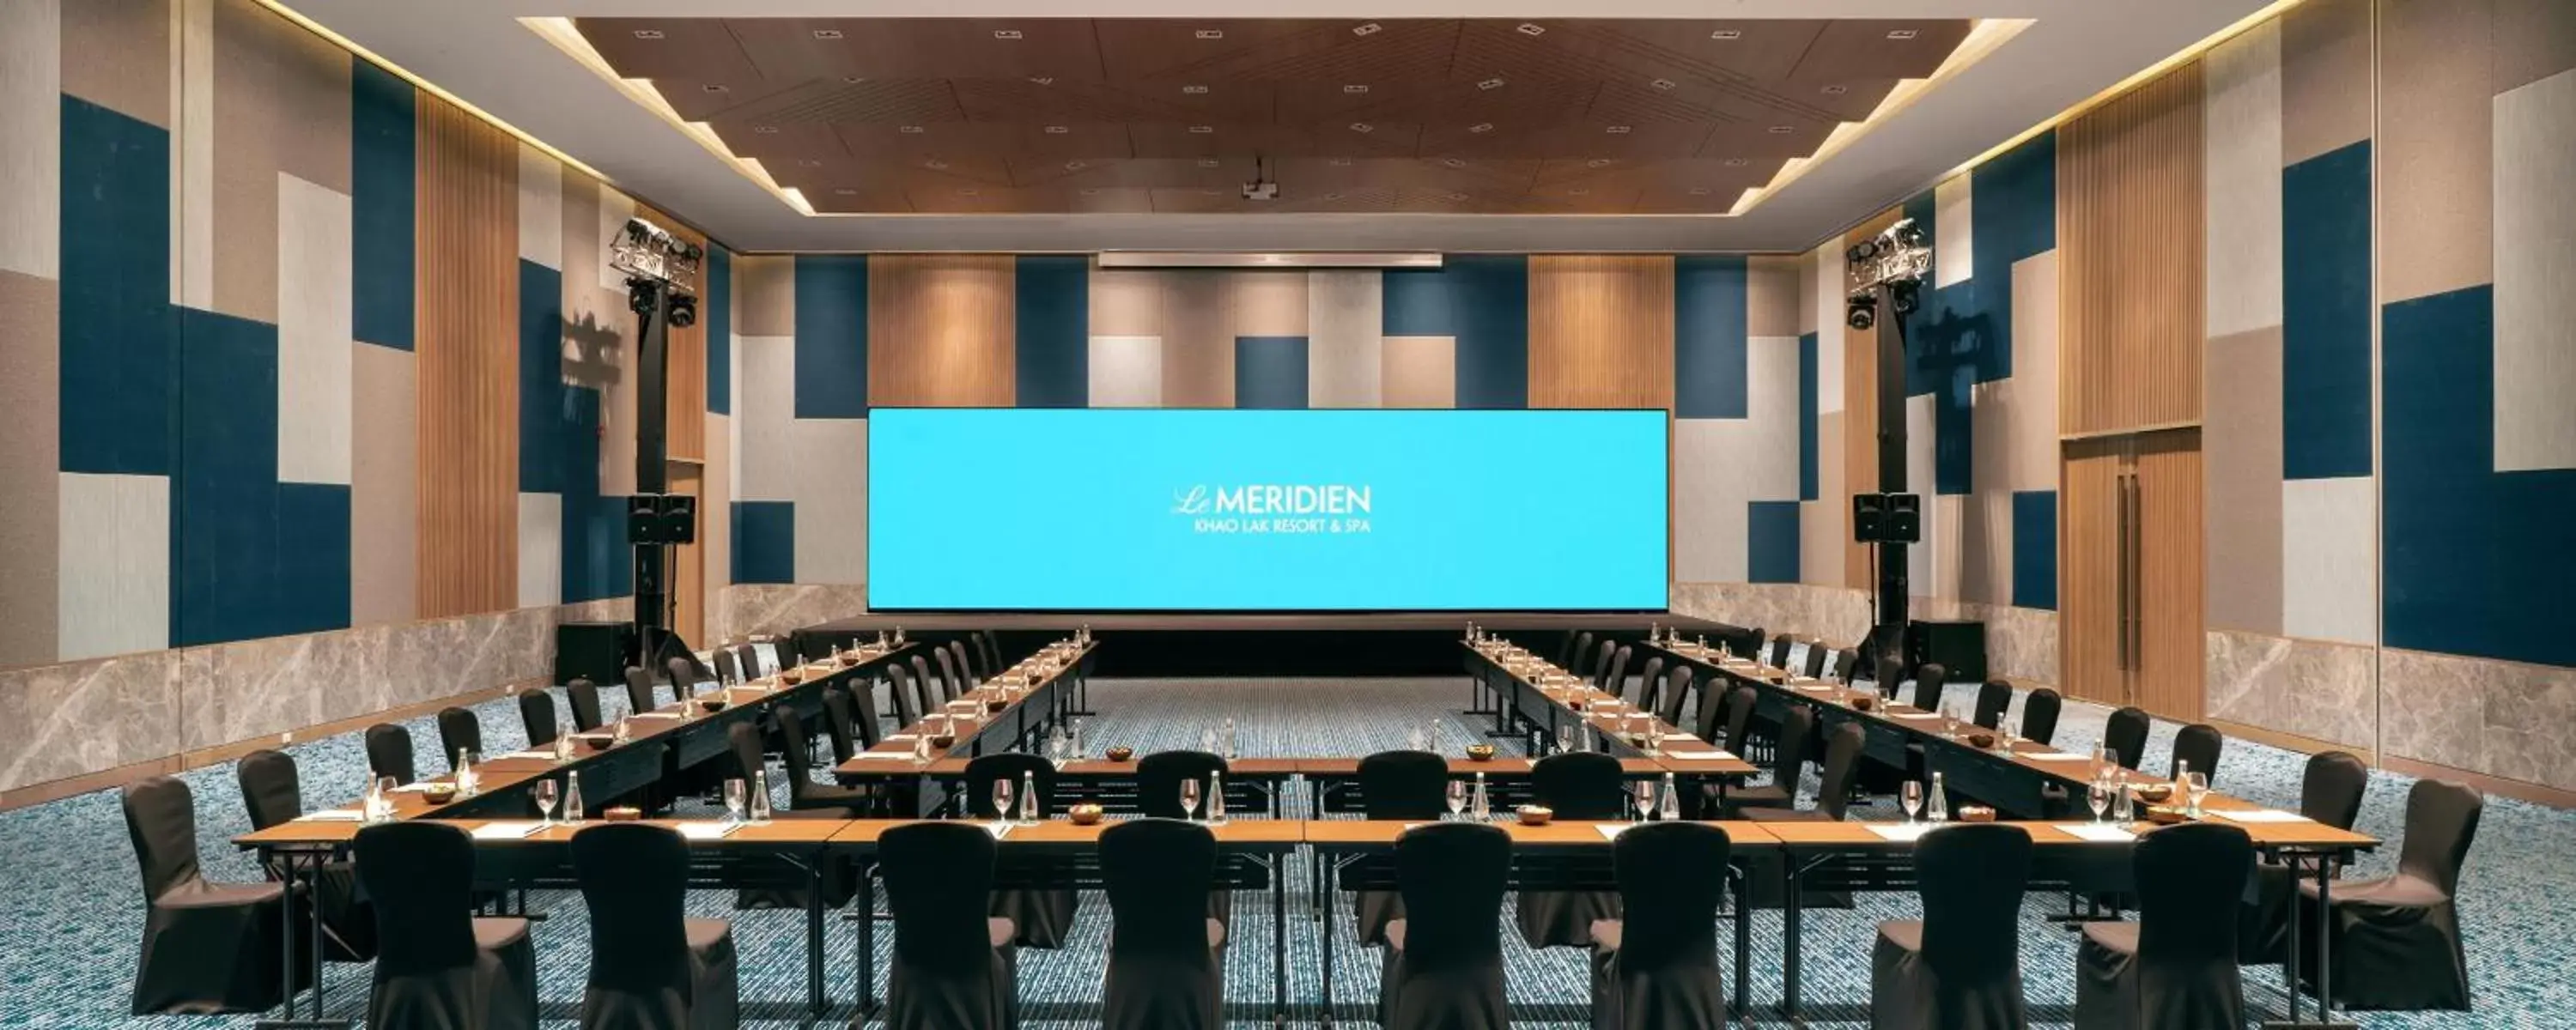 Meeting/conference room in Le Meridien Khao Lak Resort & Spa